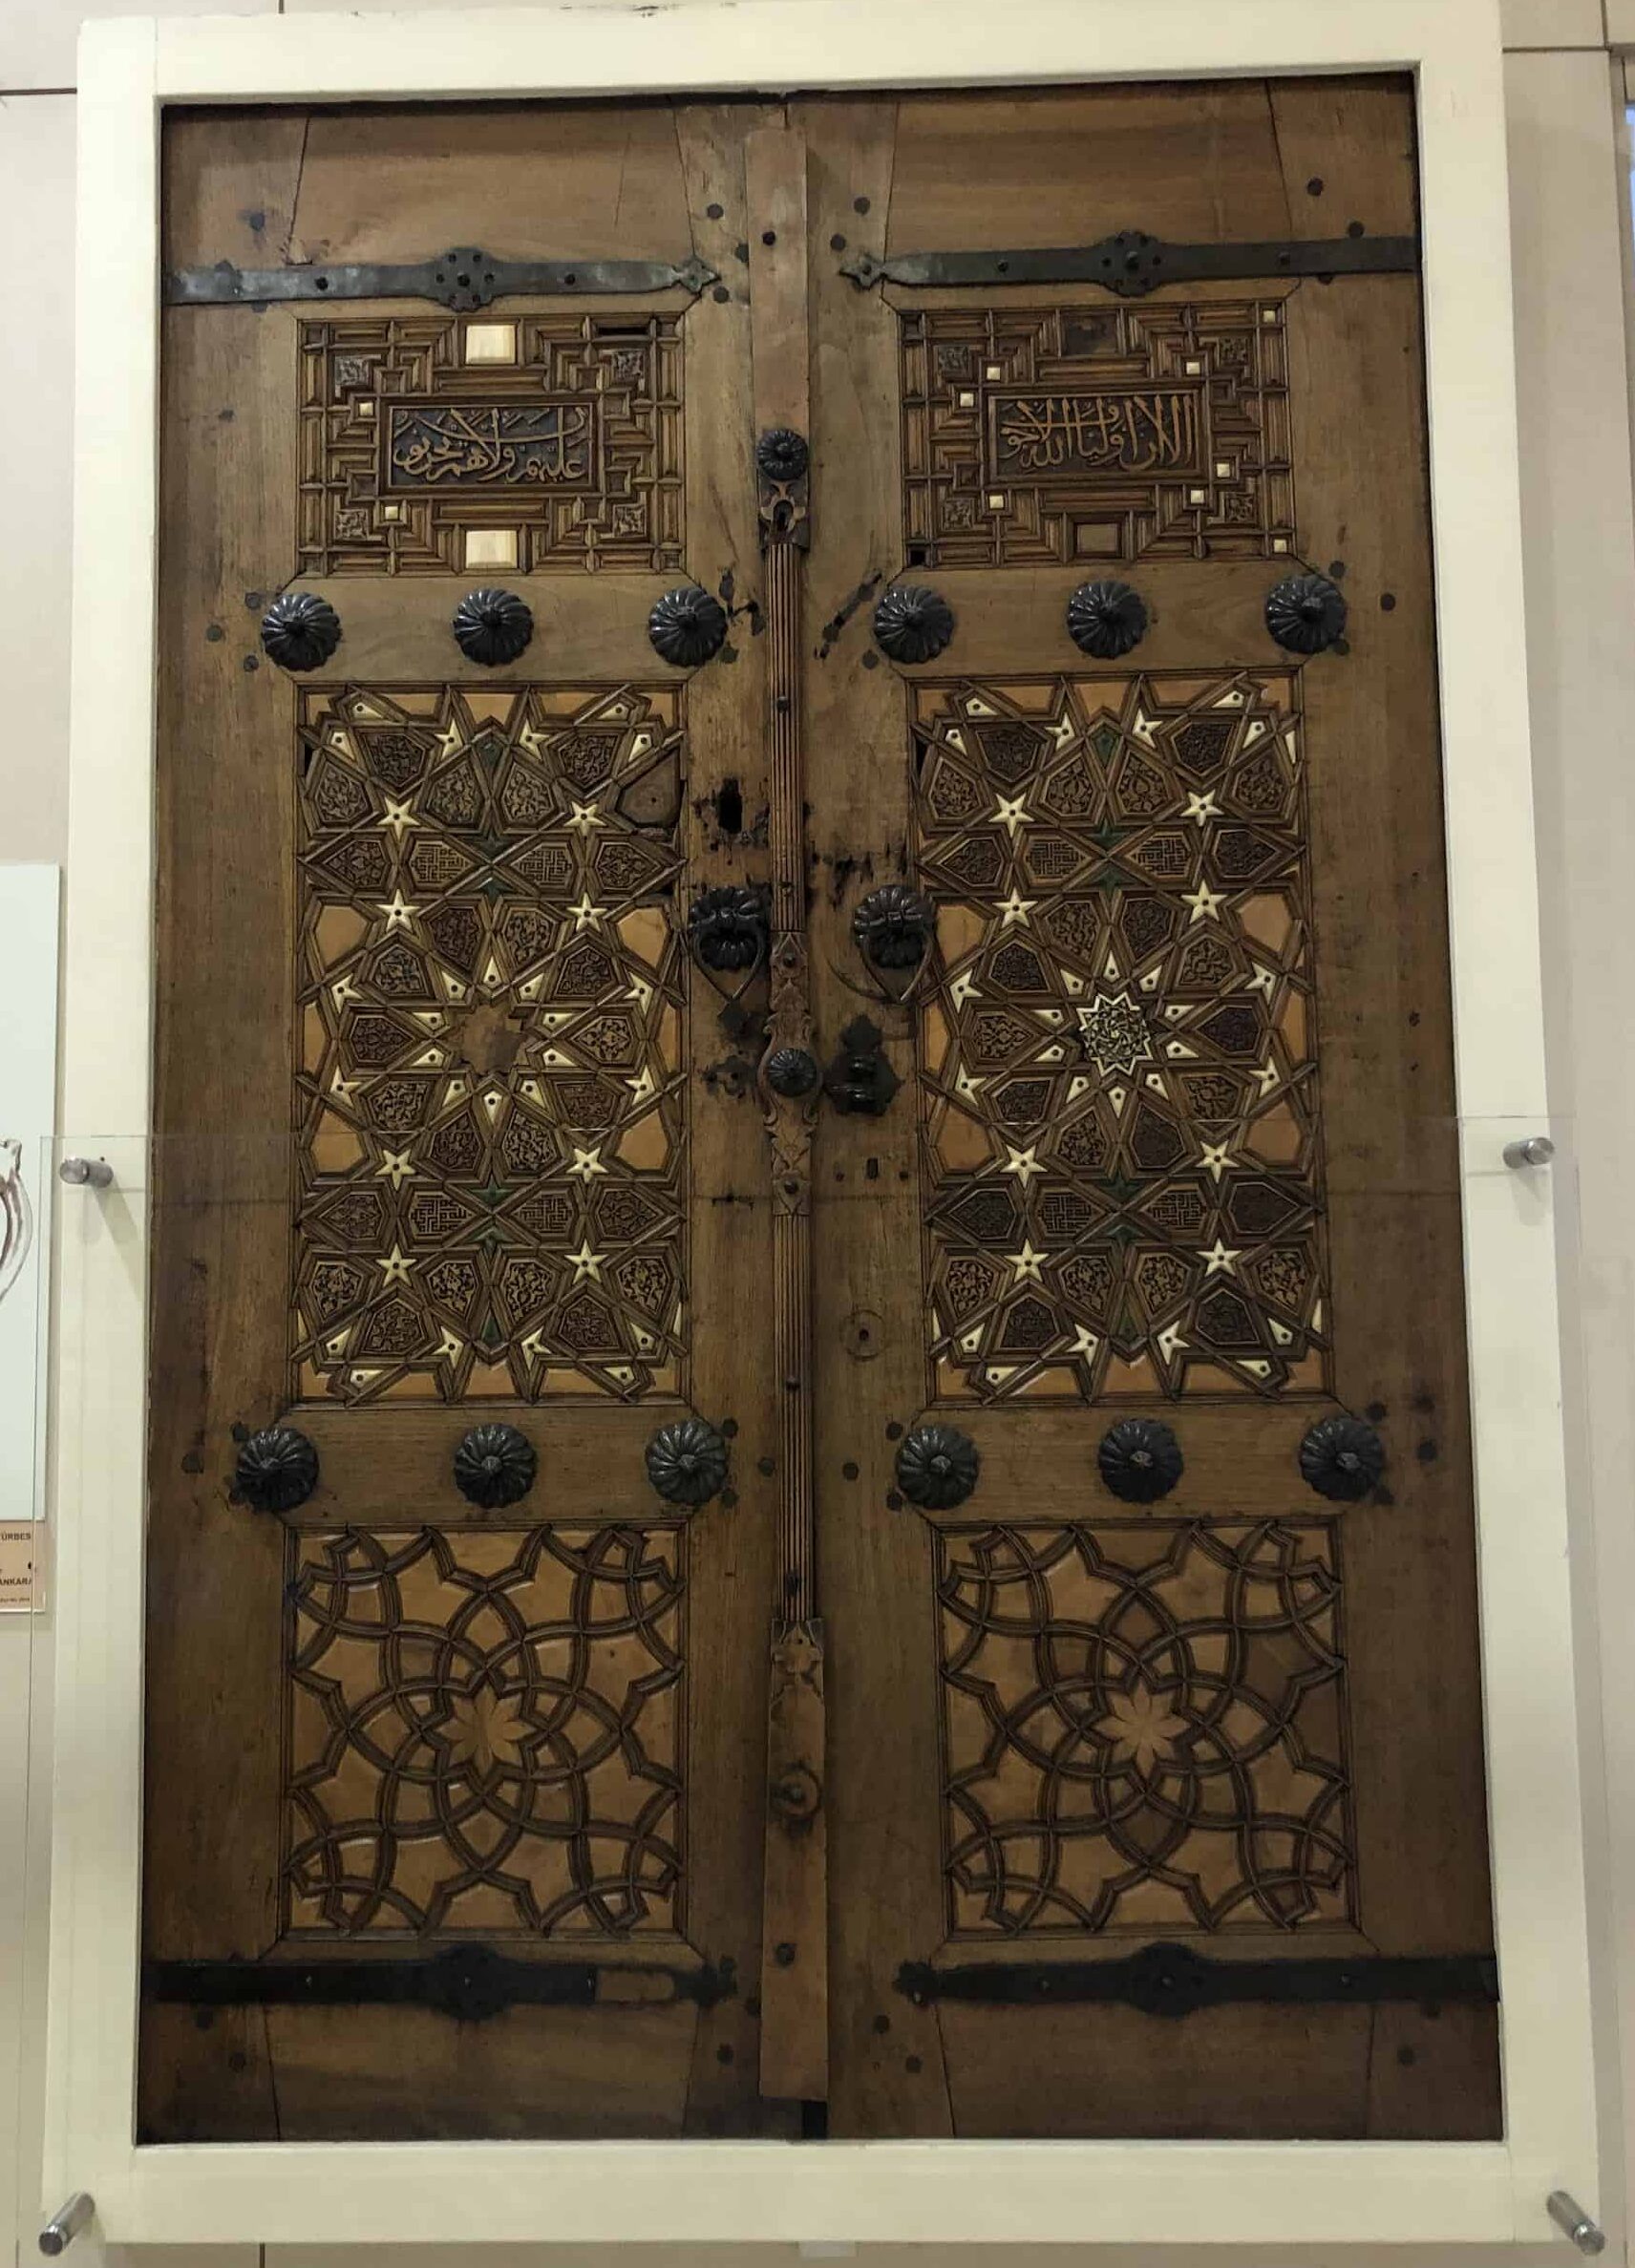 Inner doors to the tomb of Hacı Bayram